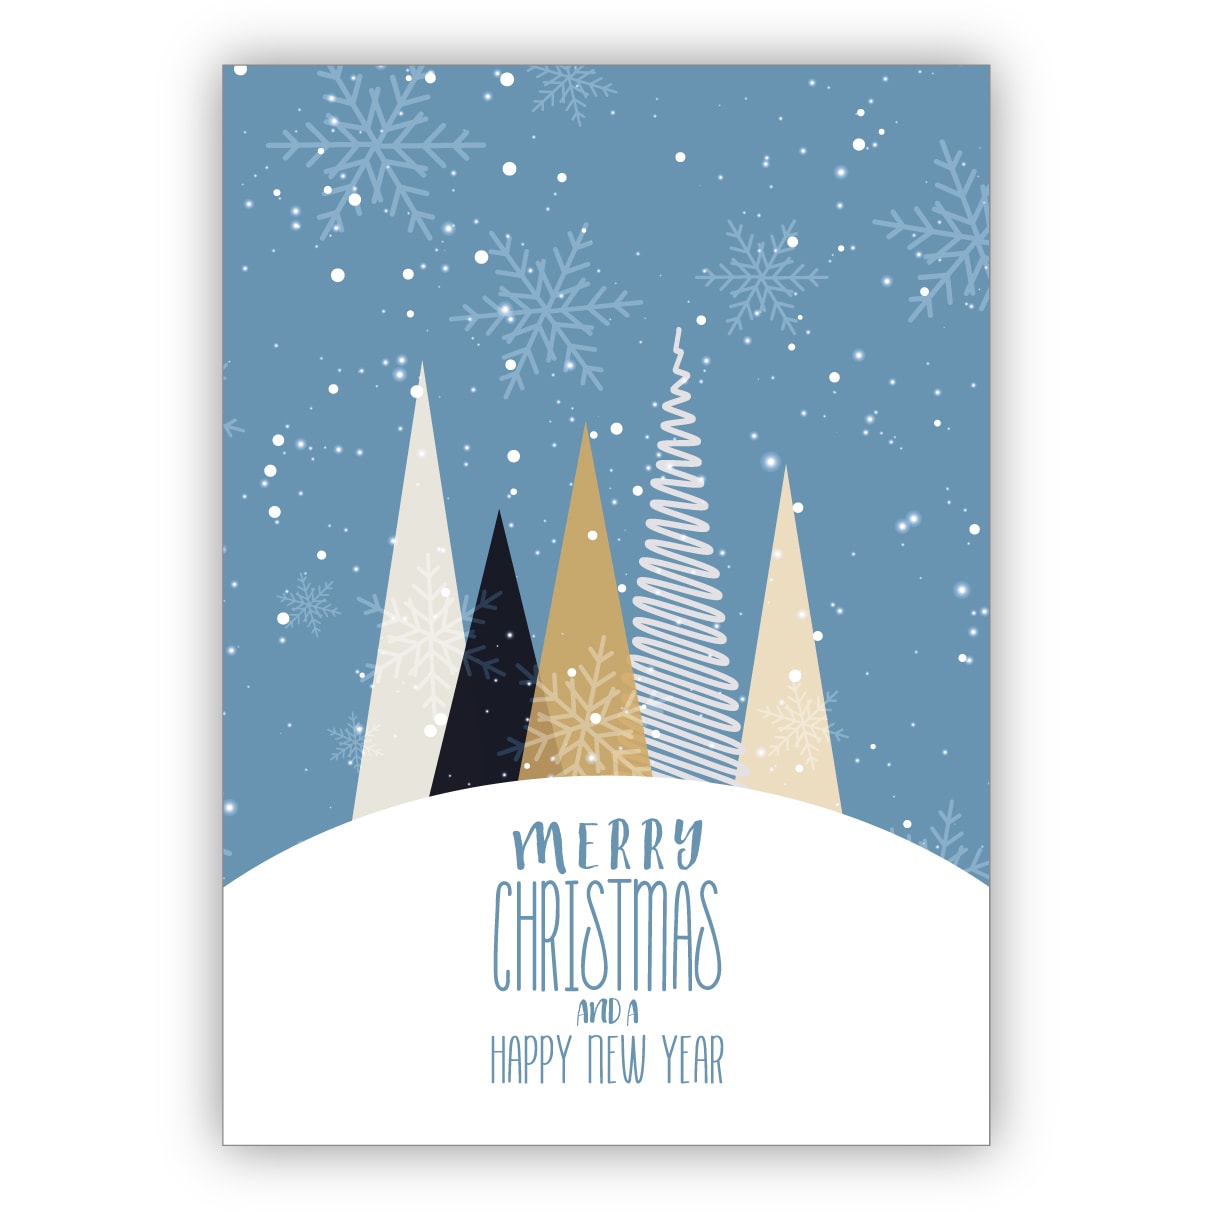 Edle moderne Weihnachtskarte mit grafischen Weihnachtsbäumen im Schnee: Merry Christmas and a happy new year